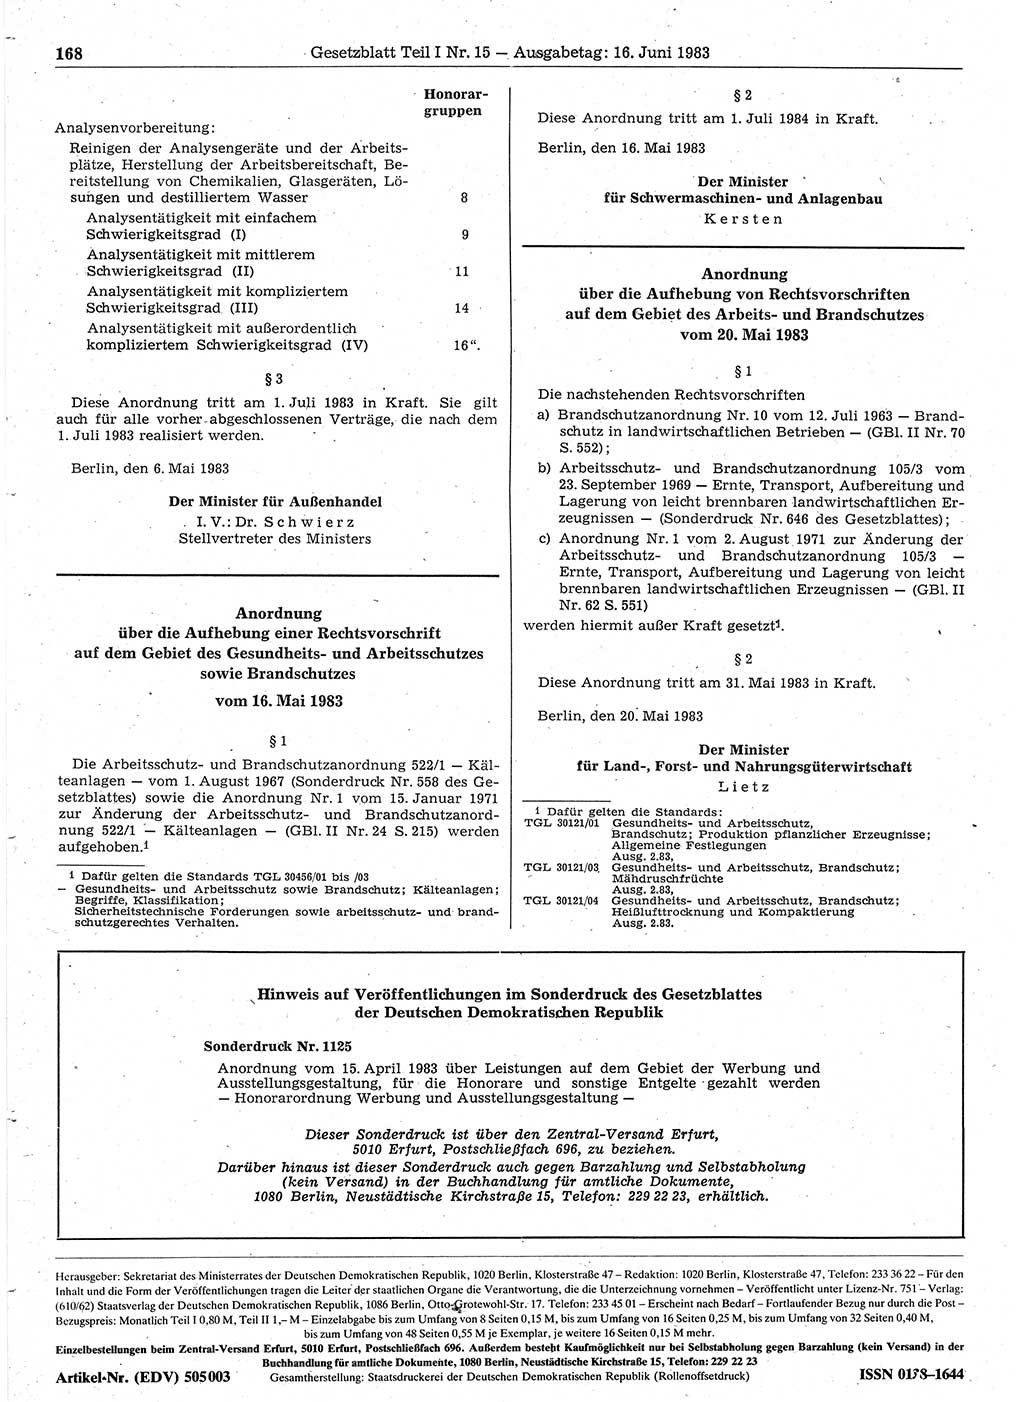 Gesetzblatt (GBl.) der Deutschen Demokratischen Republik (DDR) Teil Ⅰ 1983, Seite 168 (GBl. DDR Ⅰ 1983, S. 168)